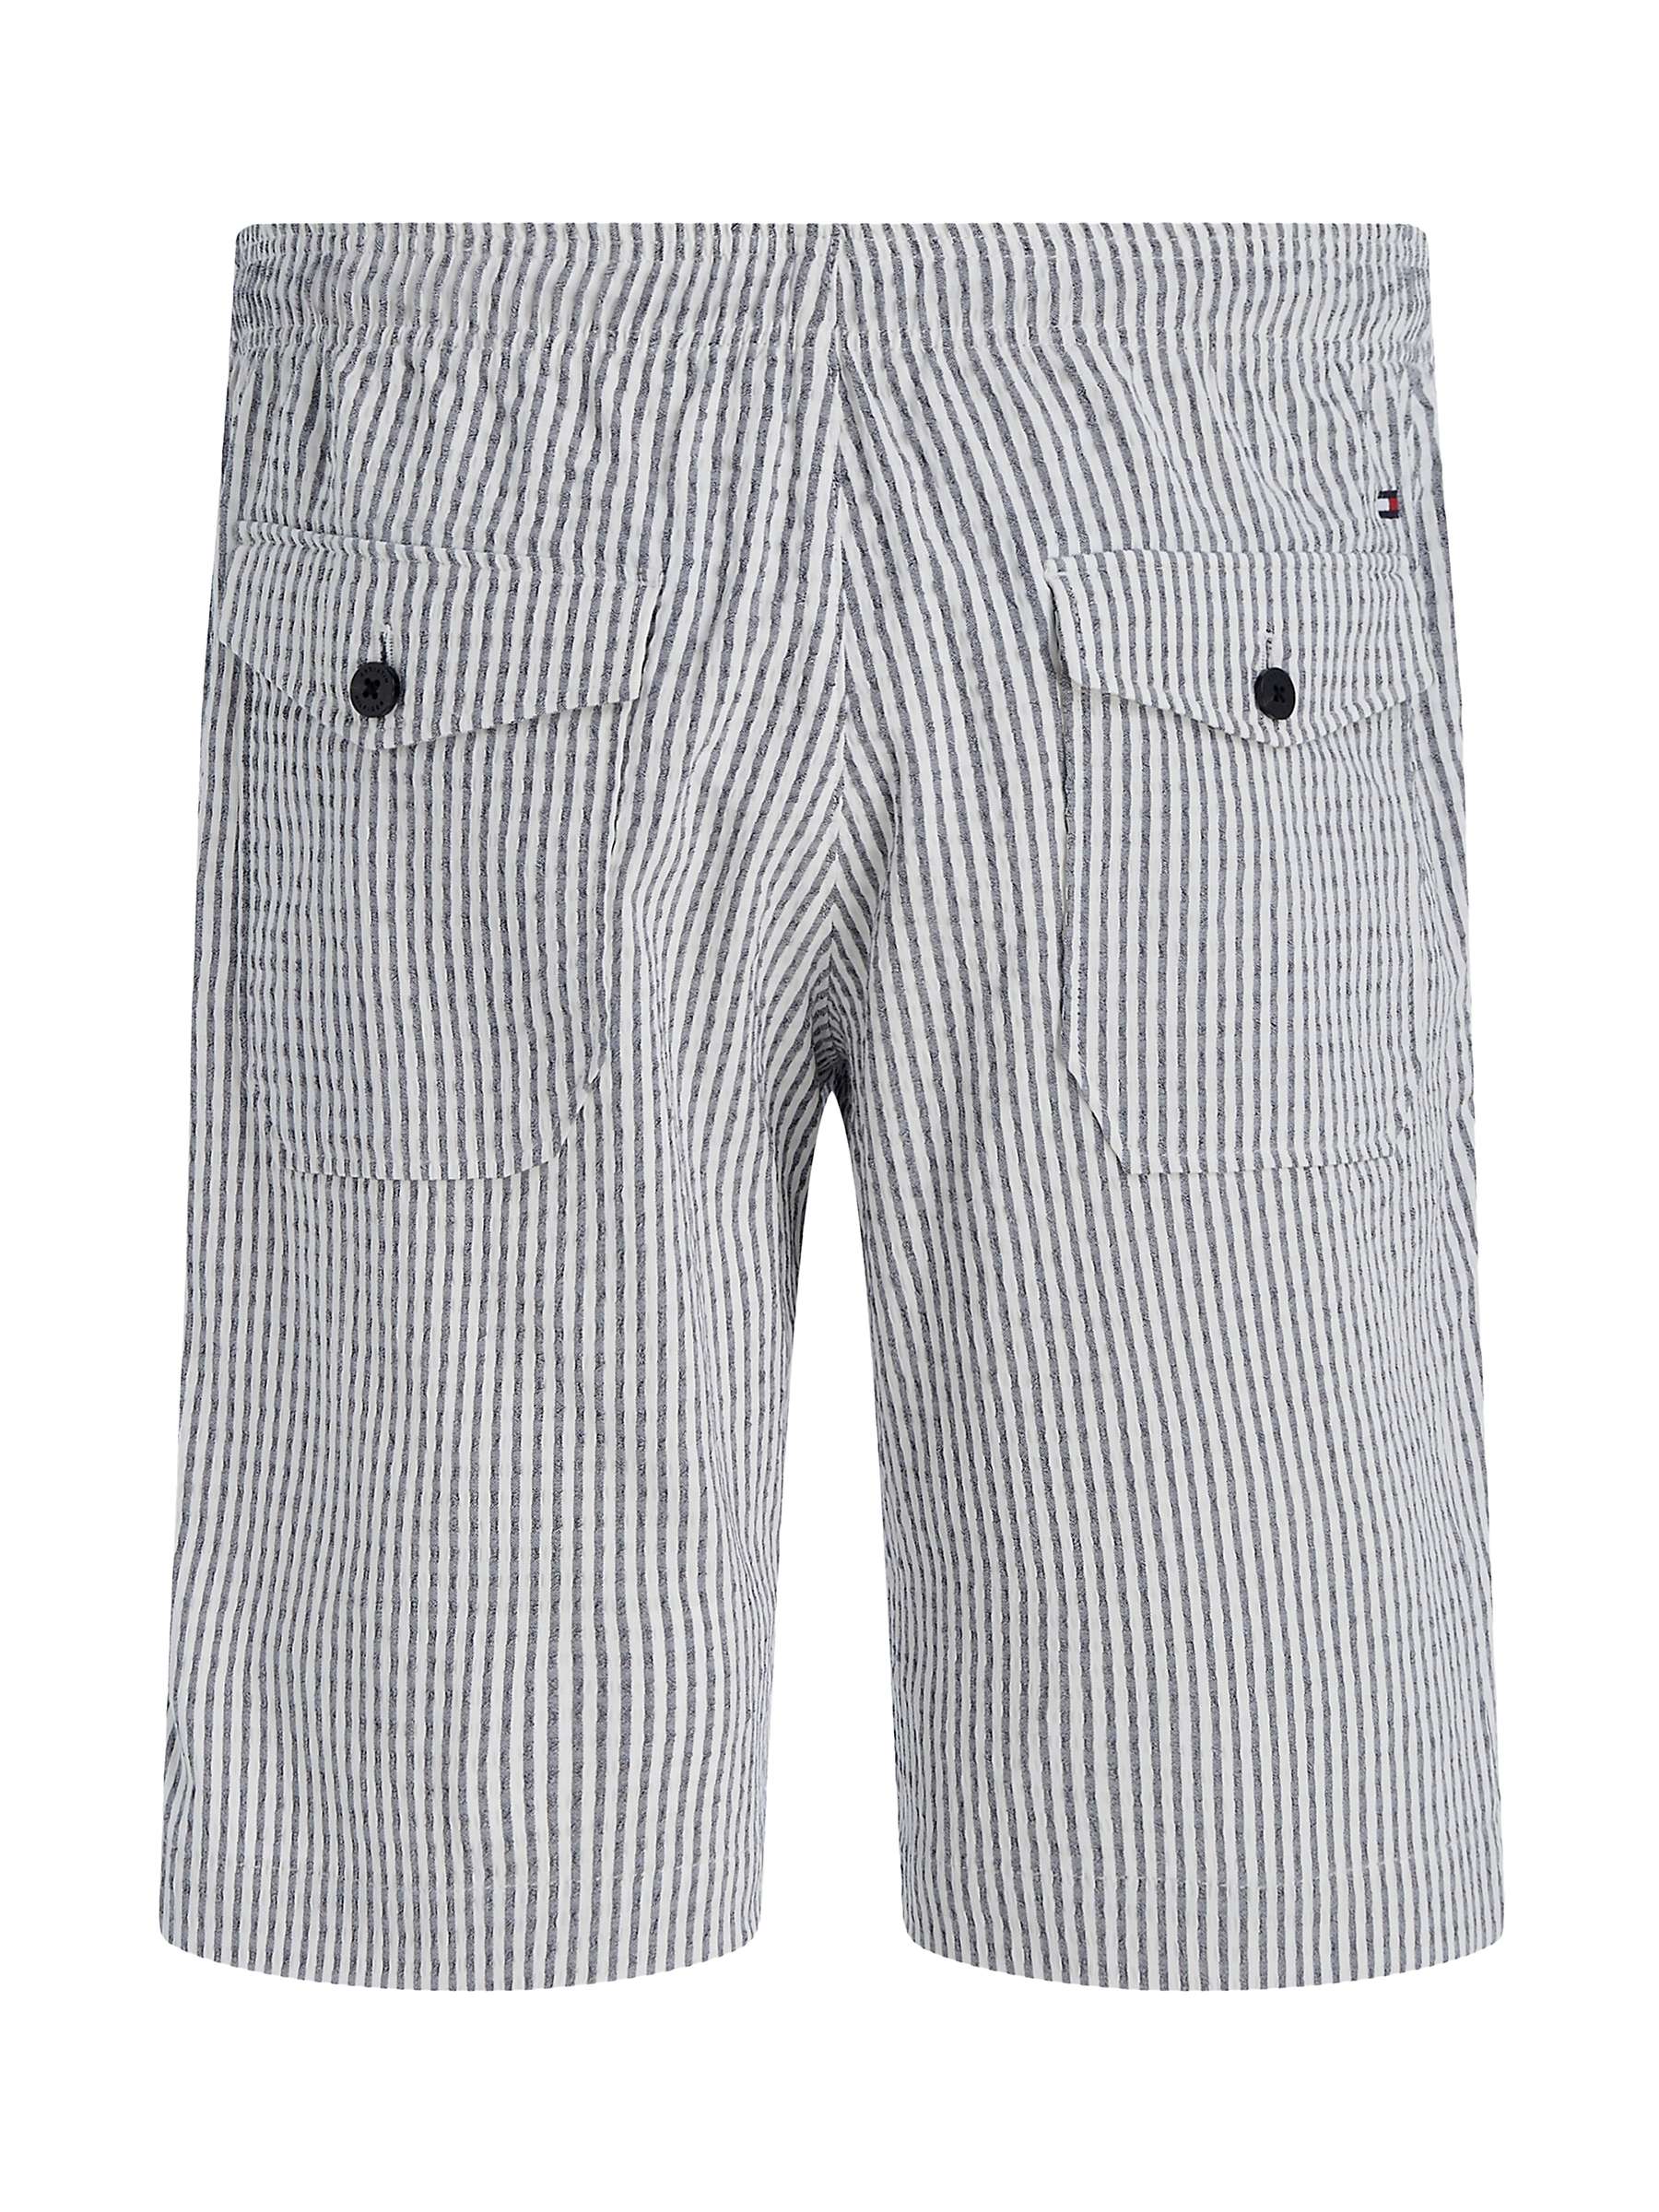 Tommy Hilfiger Harlem Seersucker Stripe Shorts, Aegean Sea/White at ...